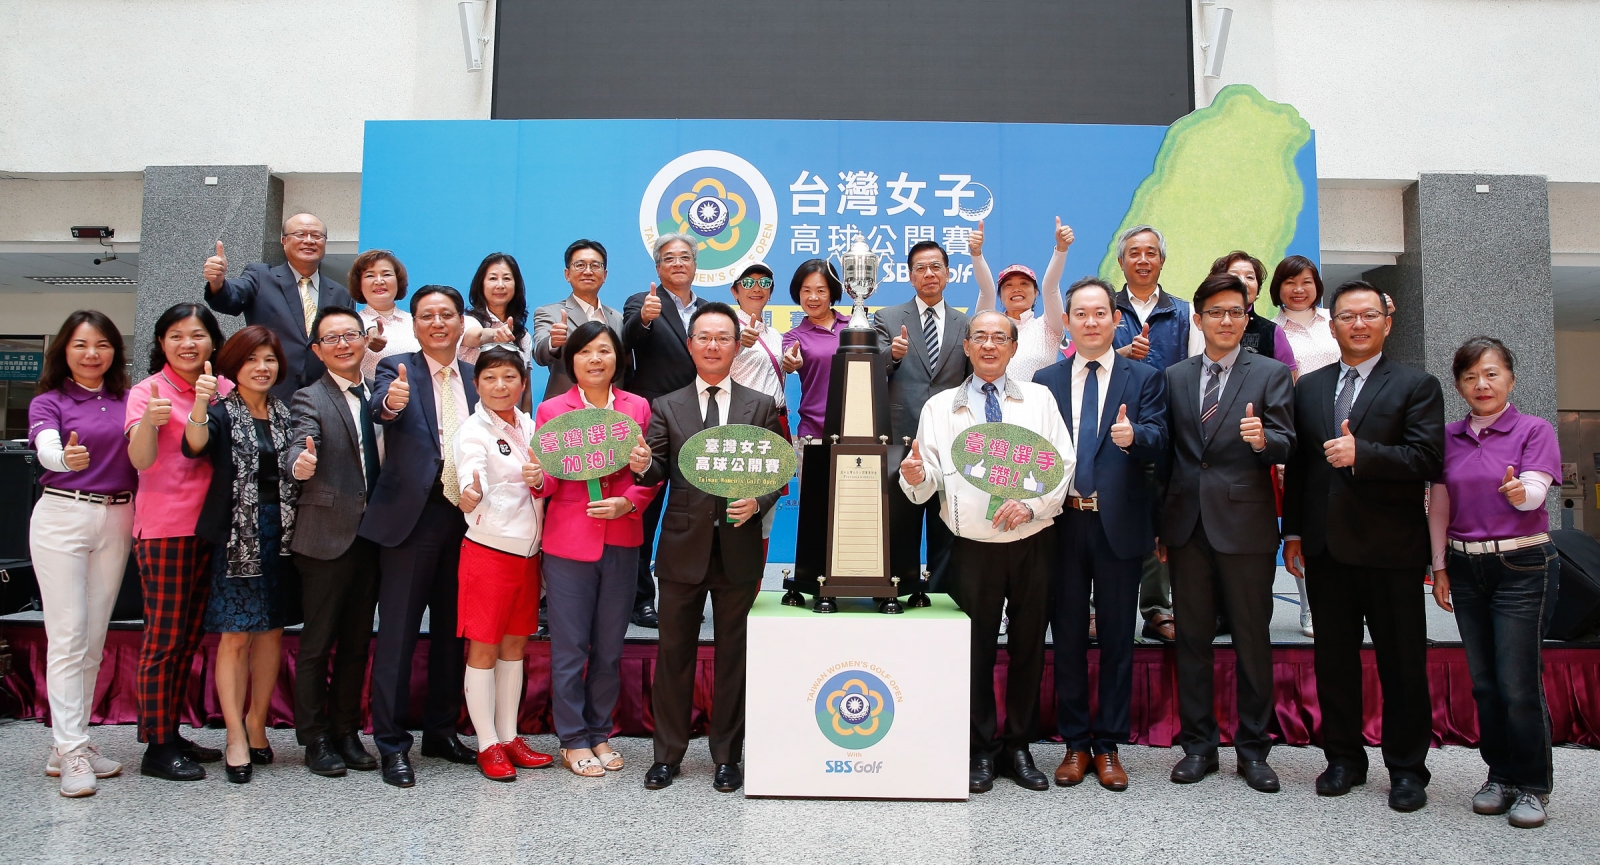 中華高協理事長王政松(前排左8)、高雄市副市長洪東煒(前排左9)、君鴻國際酒店董事長張慶輝(前排右2)、贊助企業、及高雄各界人士熱烈歡迎賽事在高雄登場。